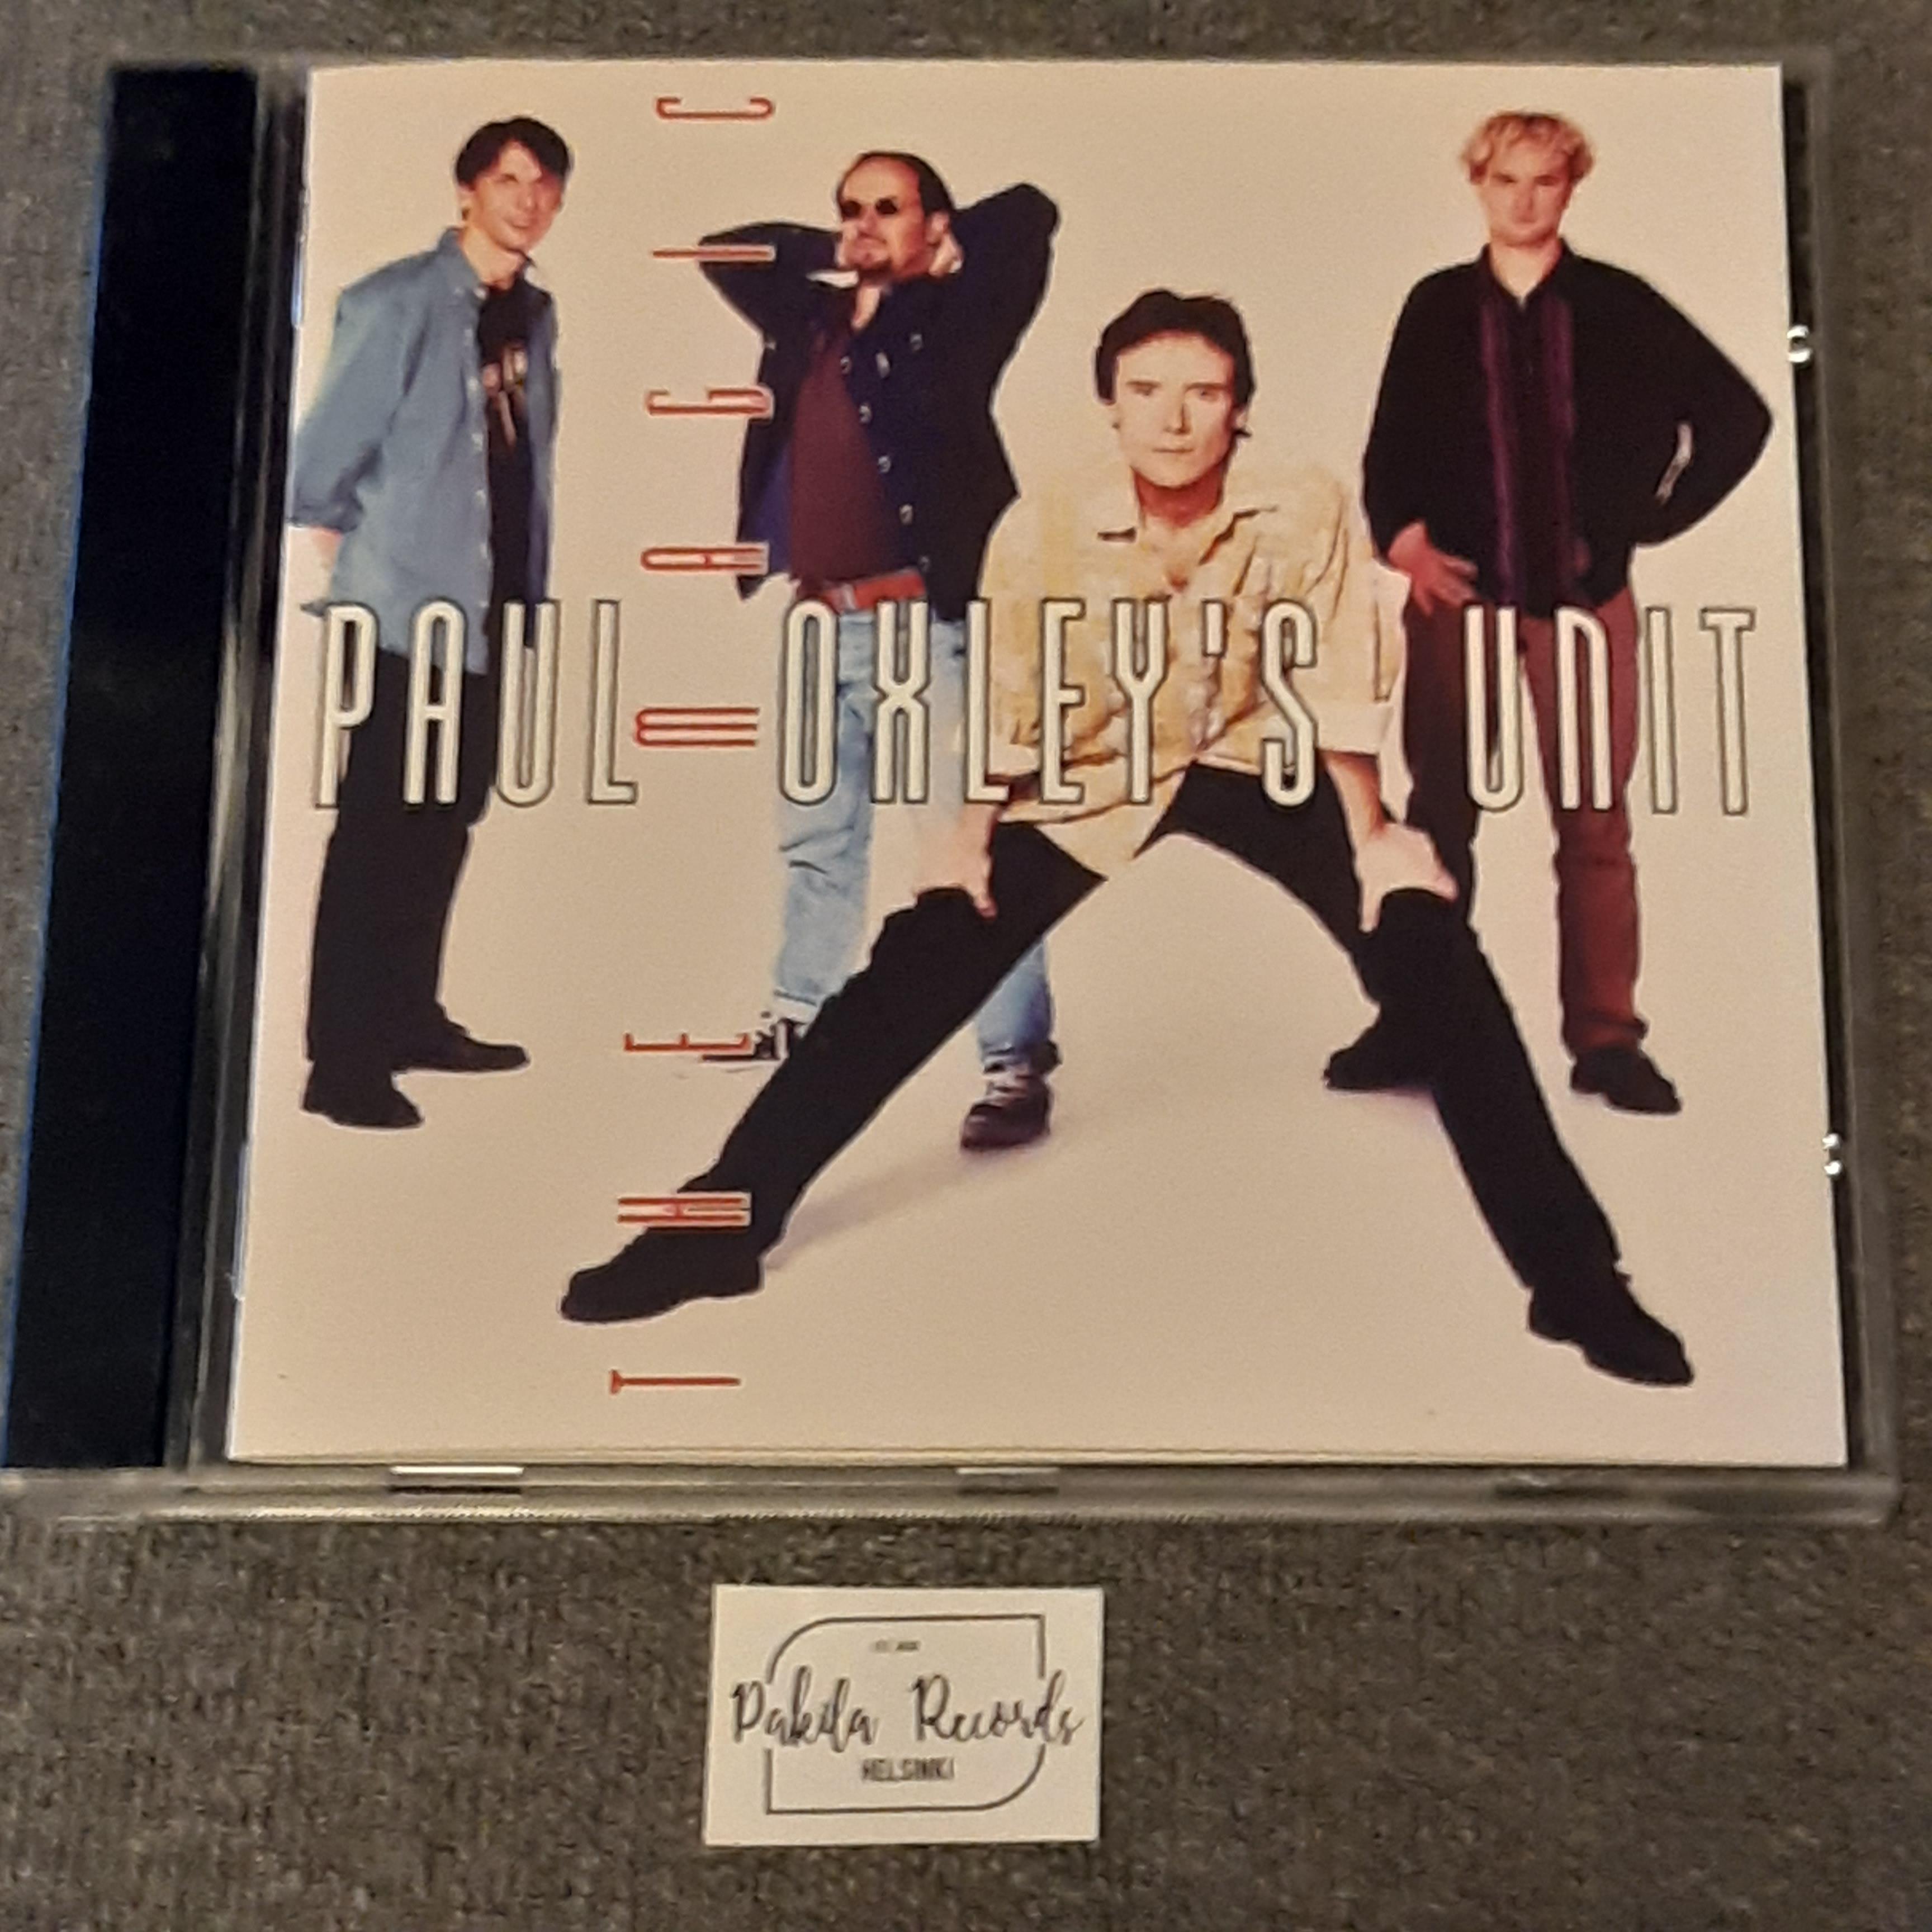 Paul Oxley's Unit - The Magic - CD (käytetty)